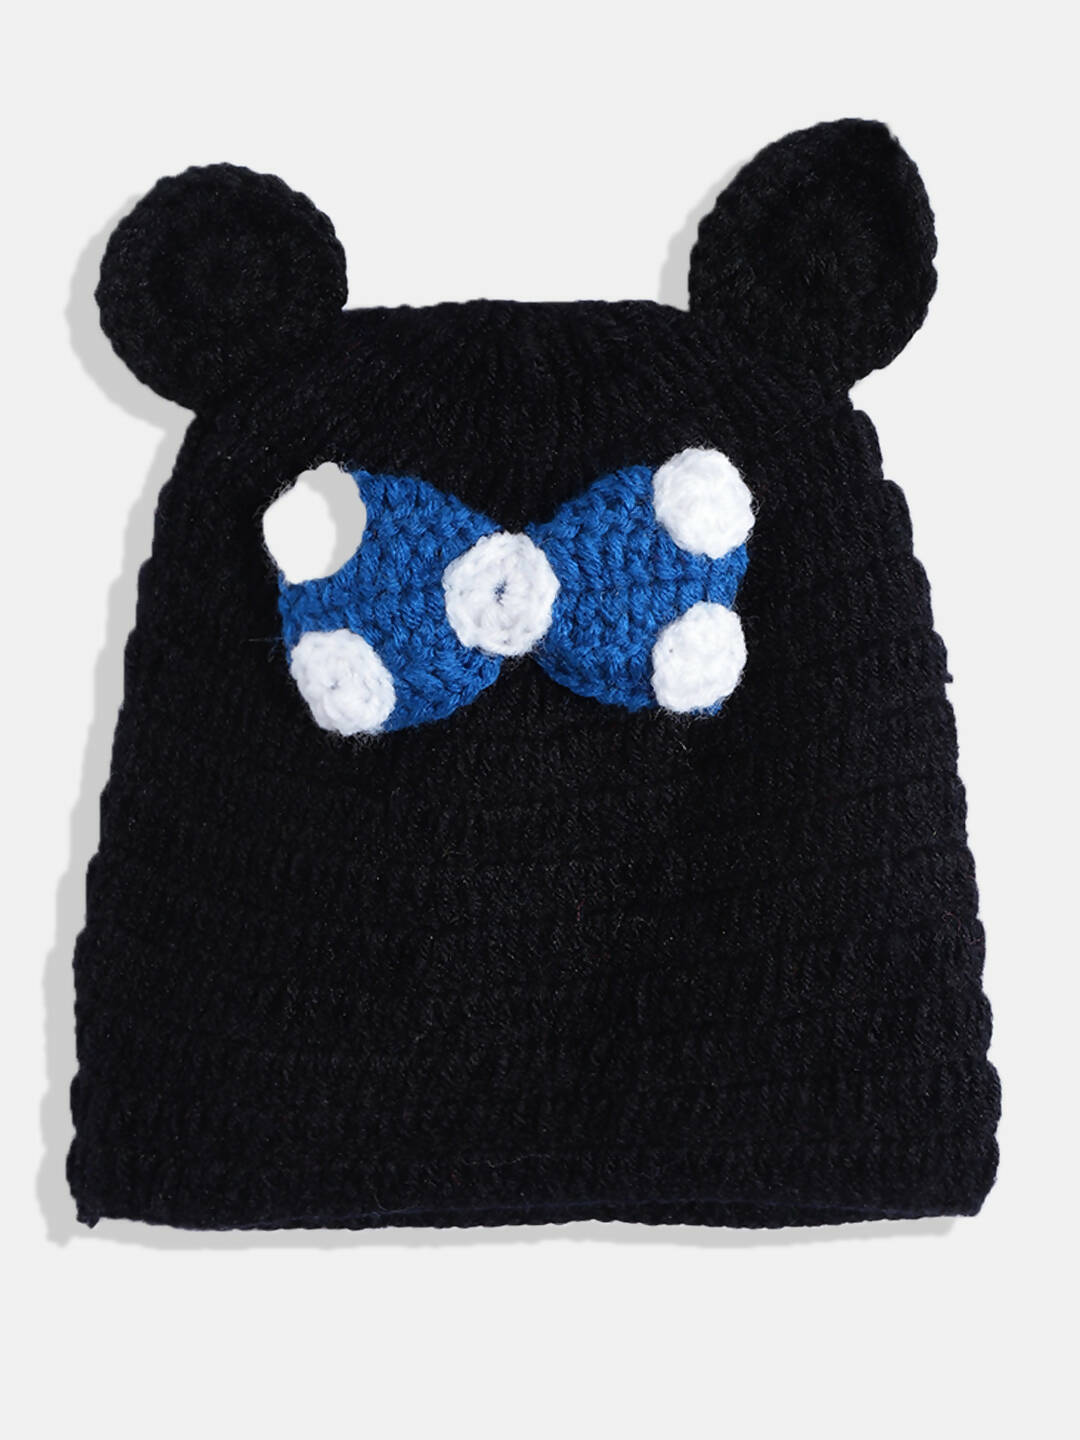 Chutput Kids Woollen Hand Knitted Short Sleeves Pola dot Detail Dress With Cap - Blue - Distacart